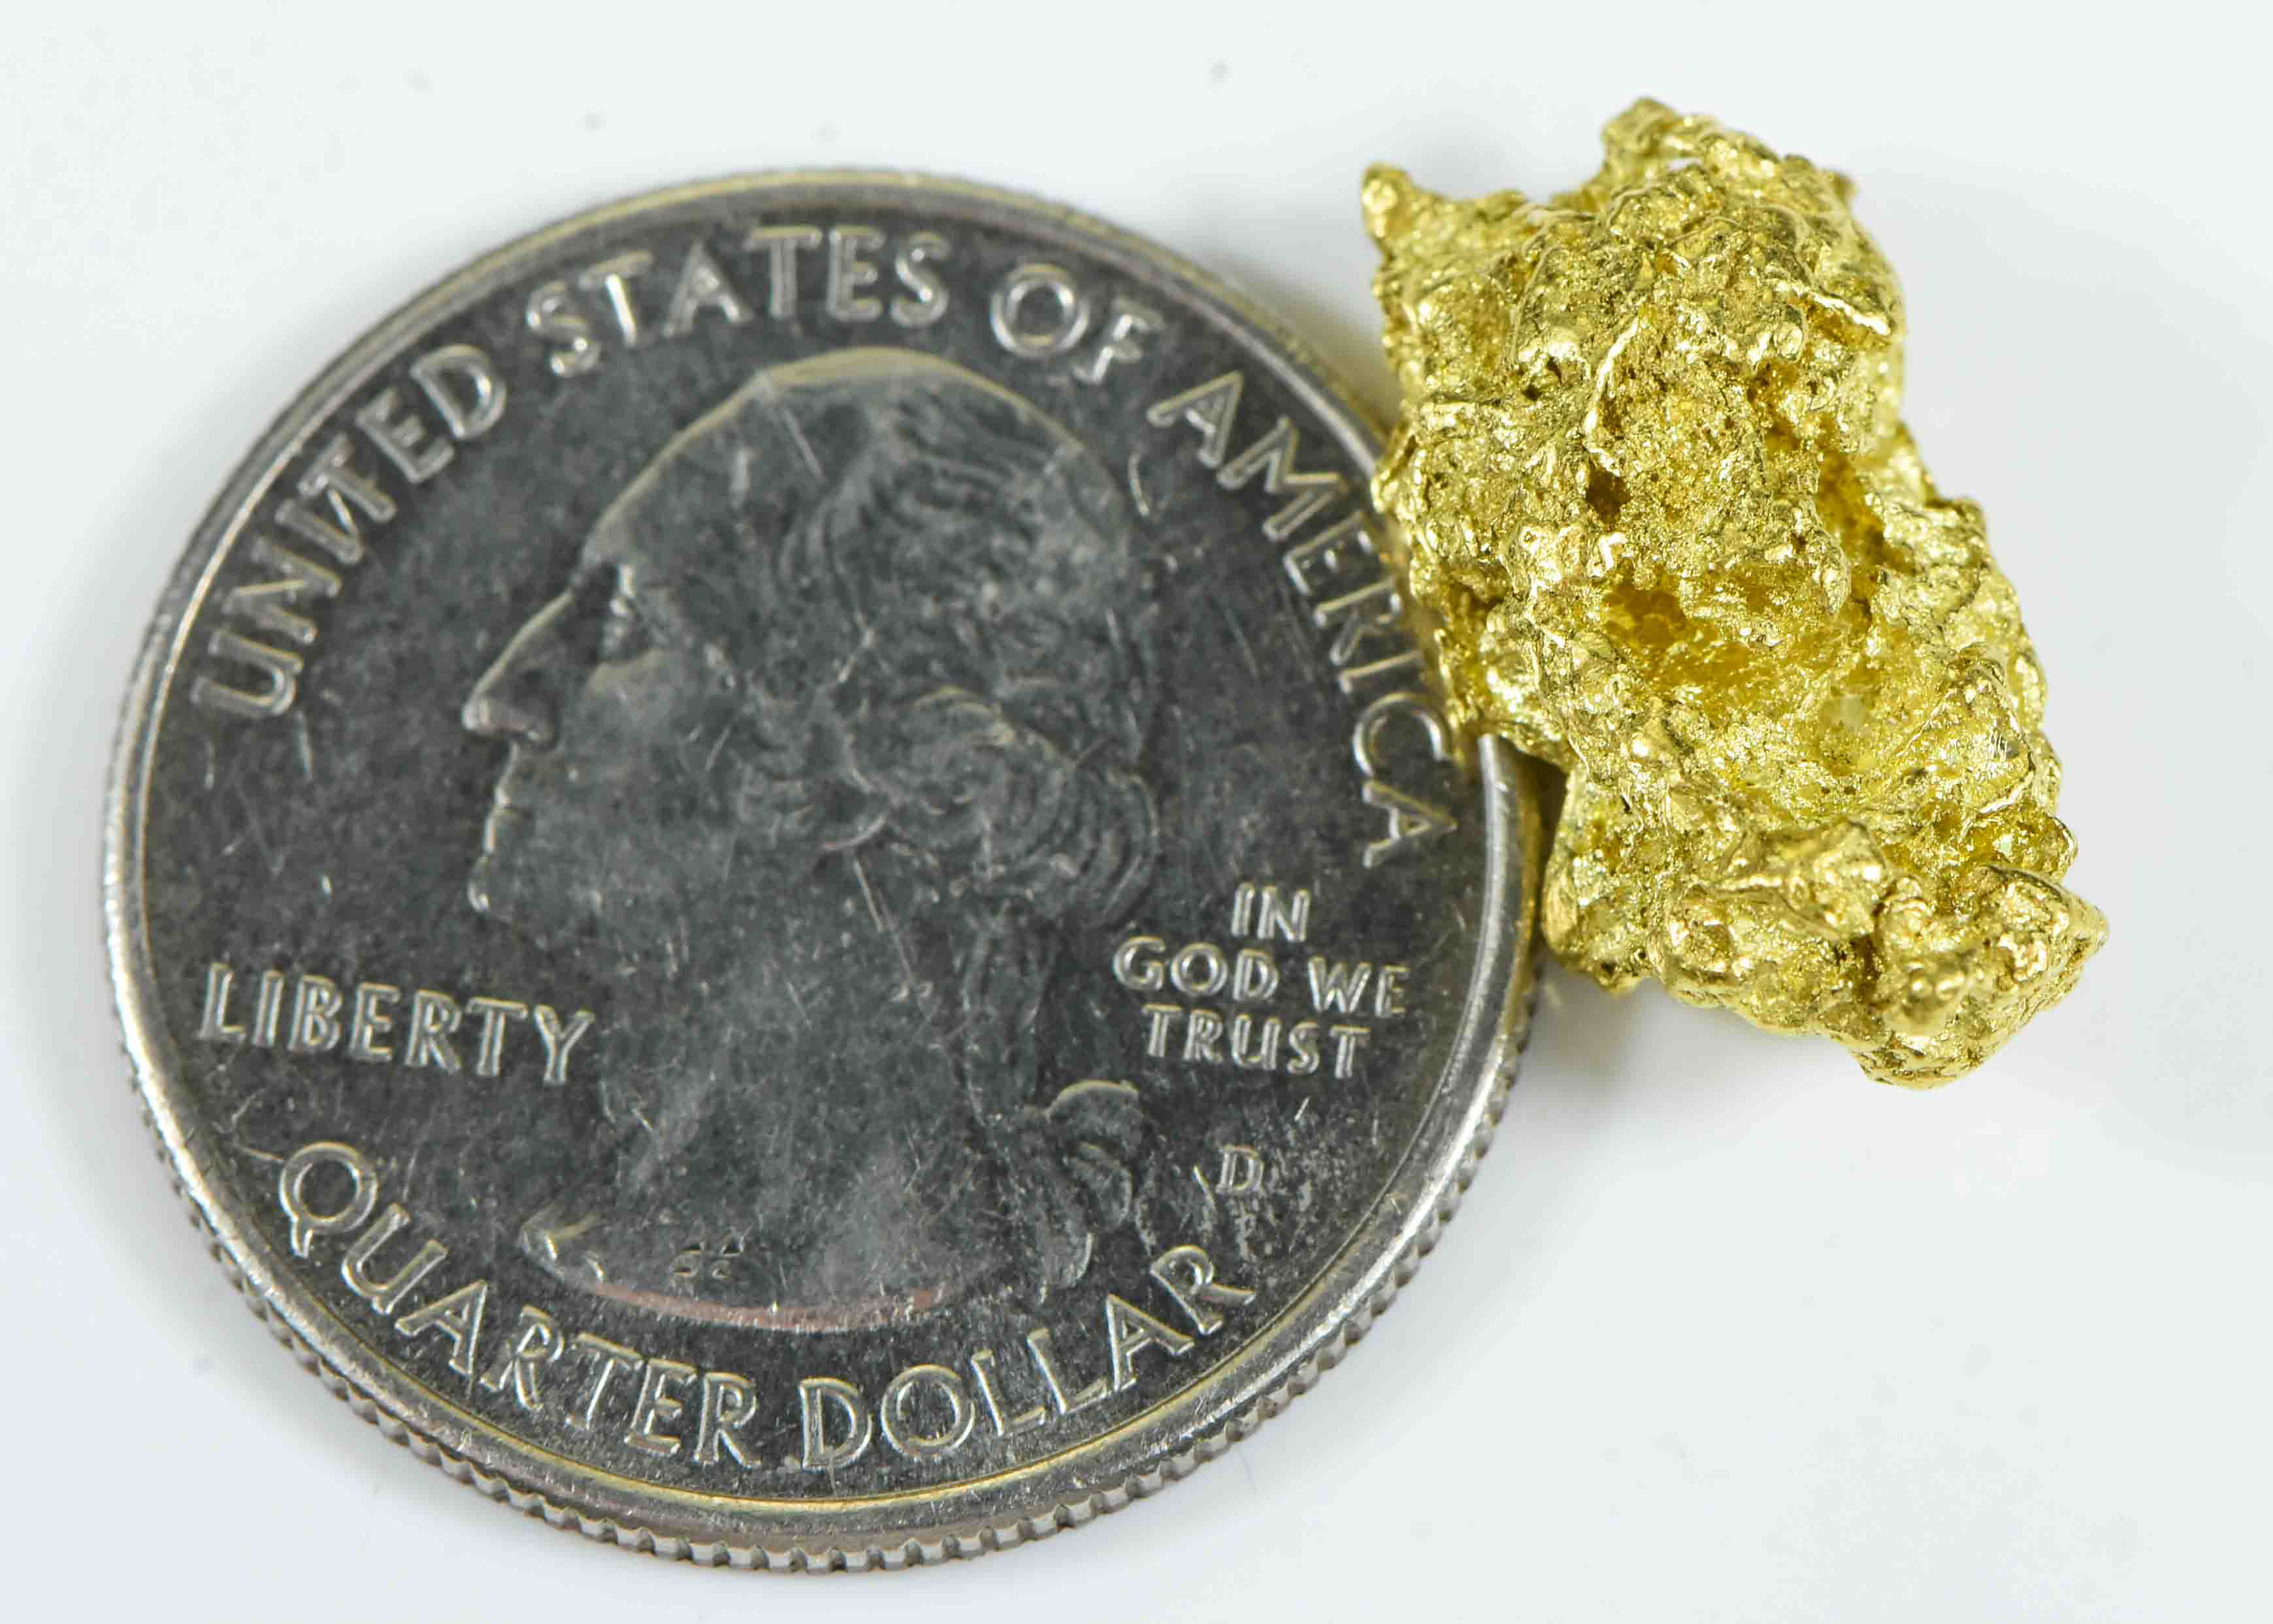 #448 Alaskan BC Natural Gold Nugget 5.59 Grams Genuine